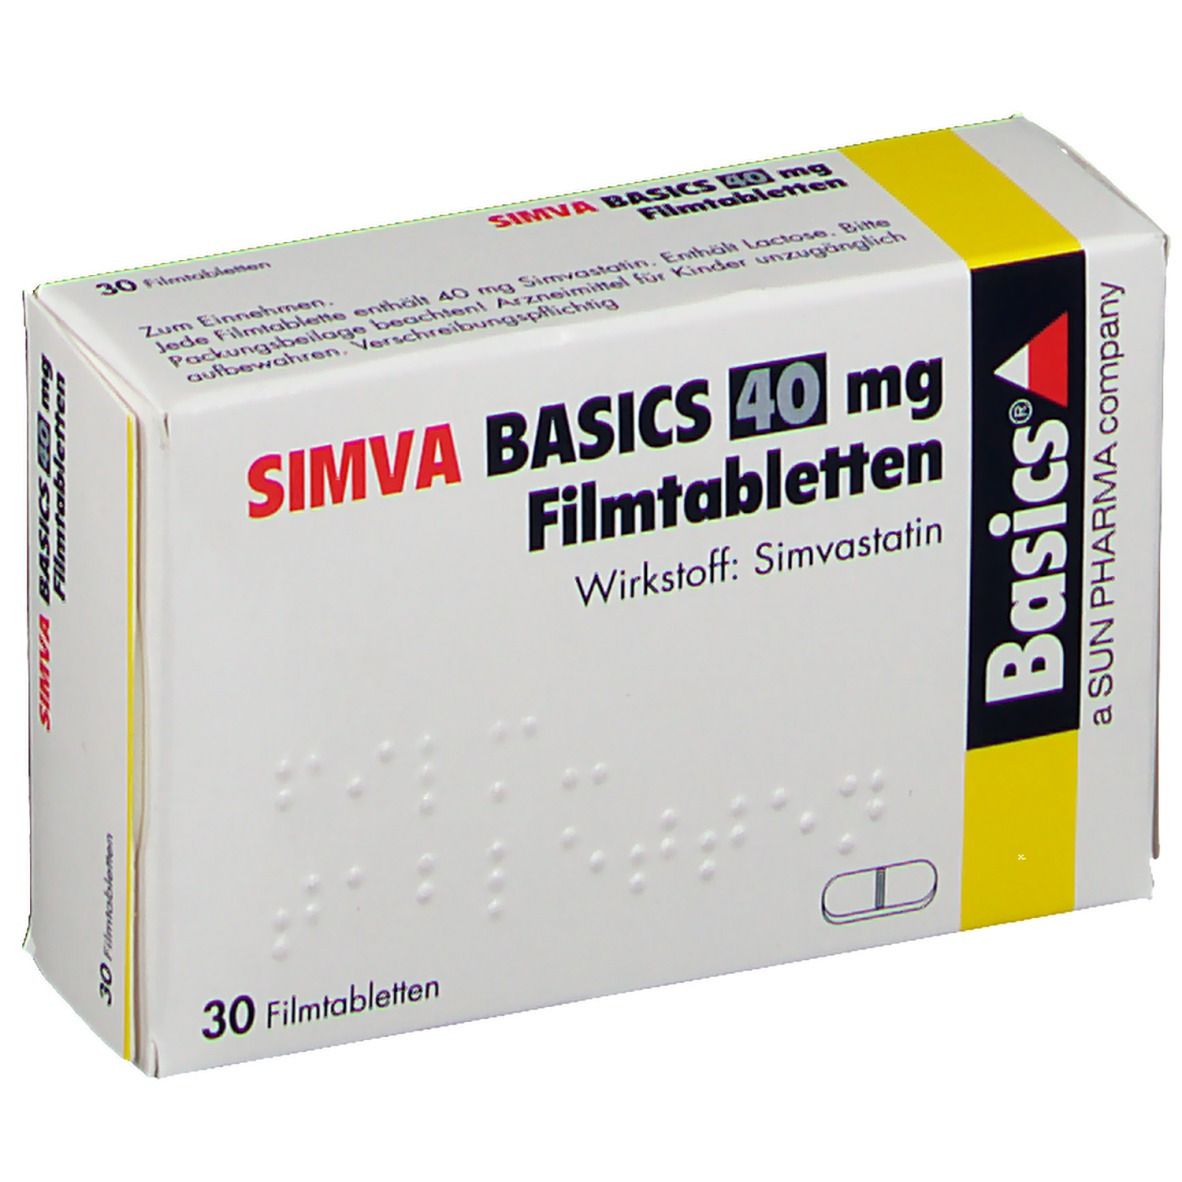 SIMVA BASICS 40 mg